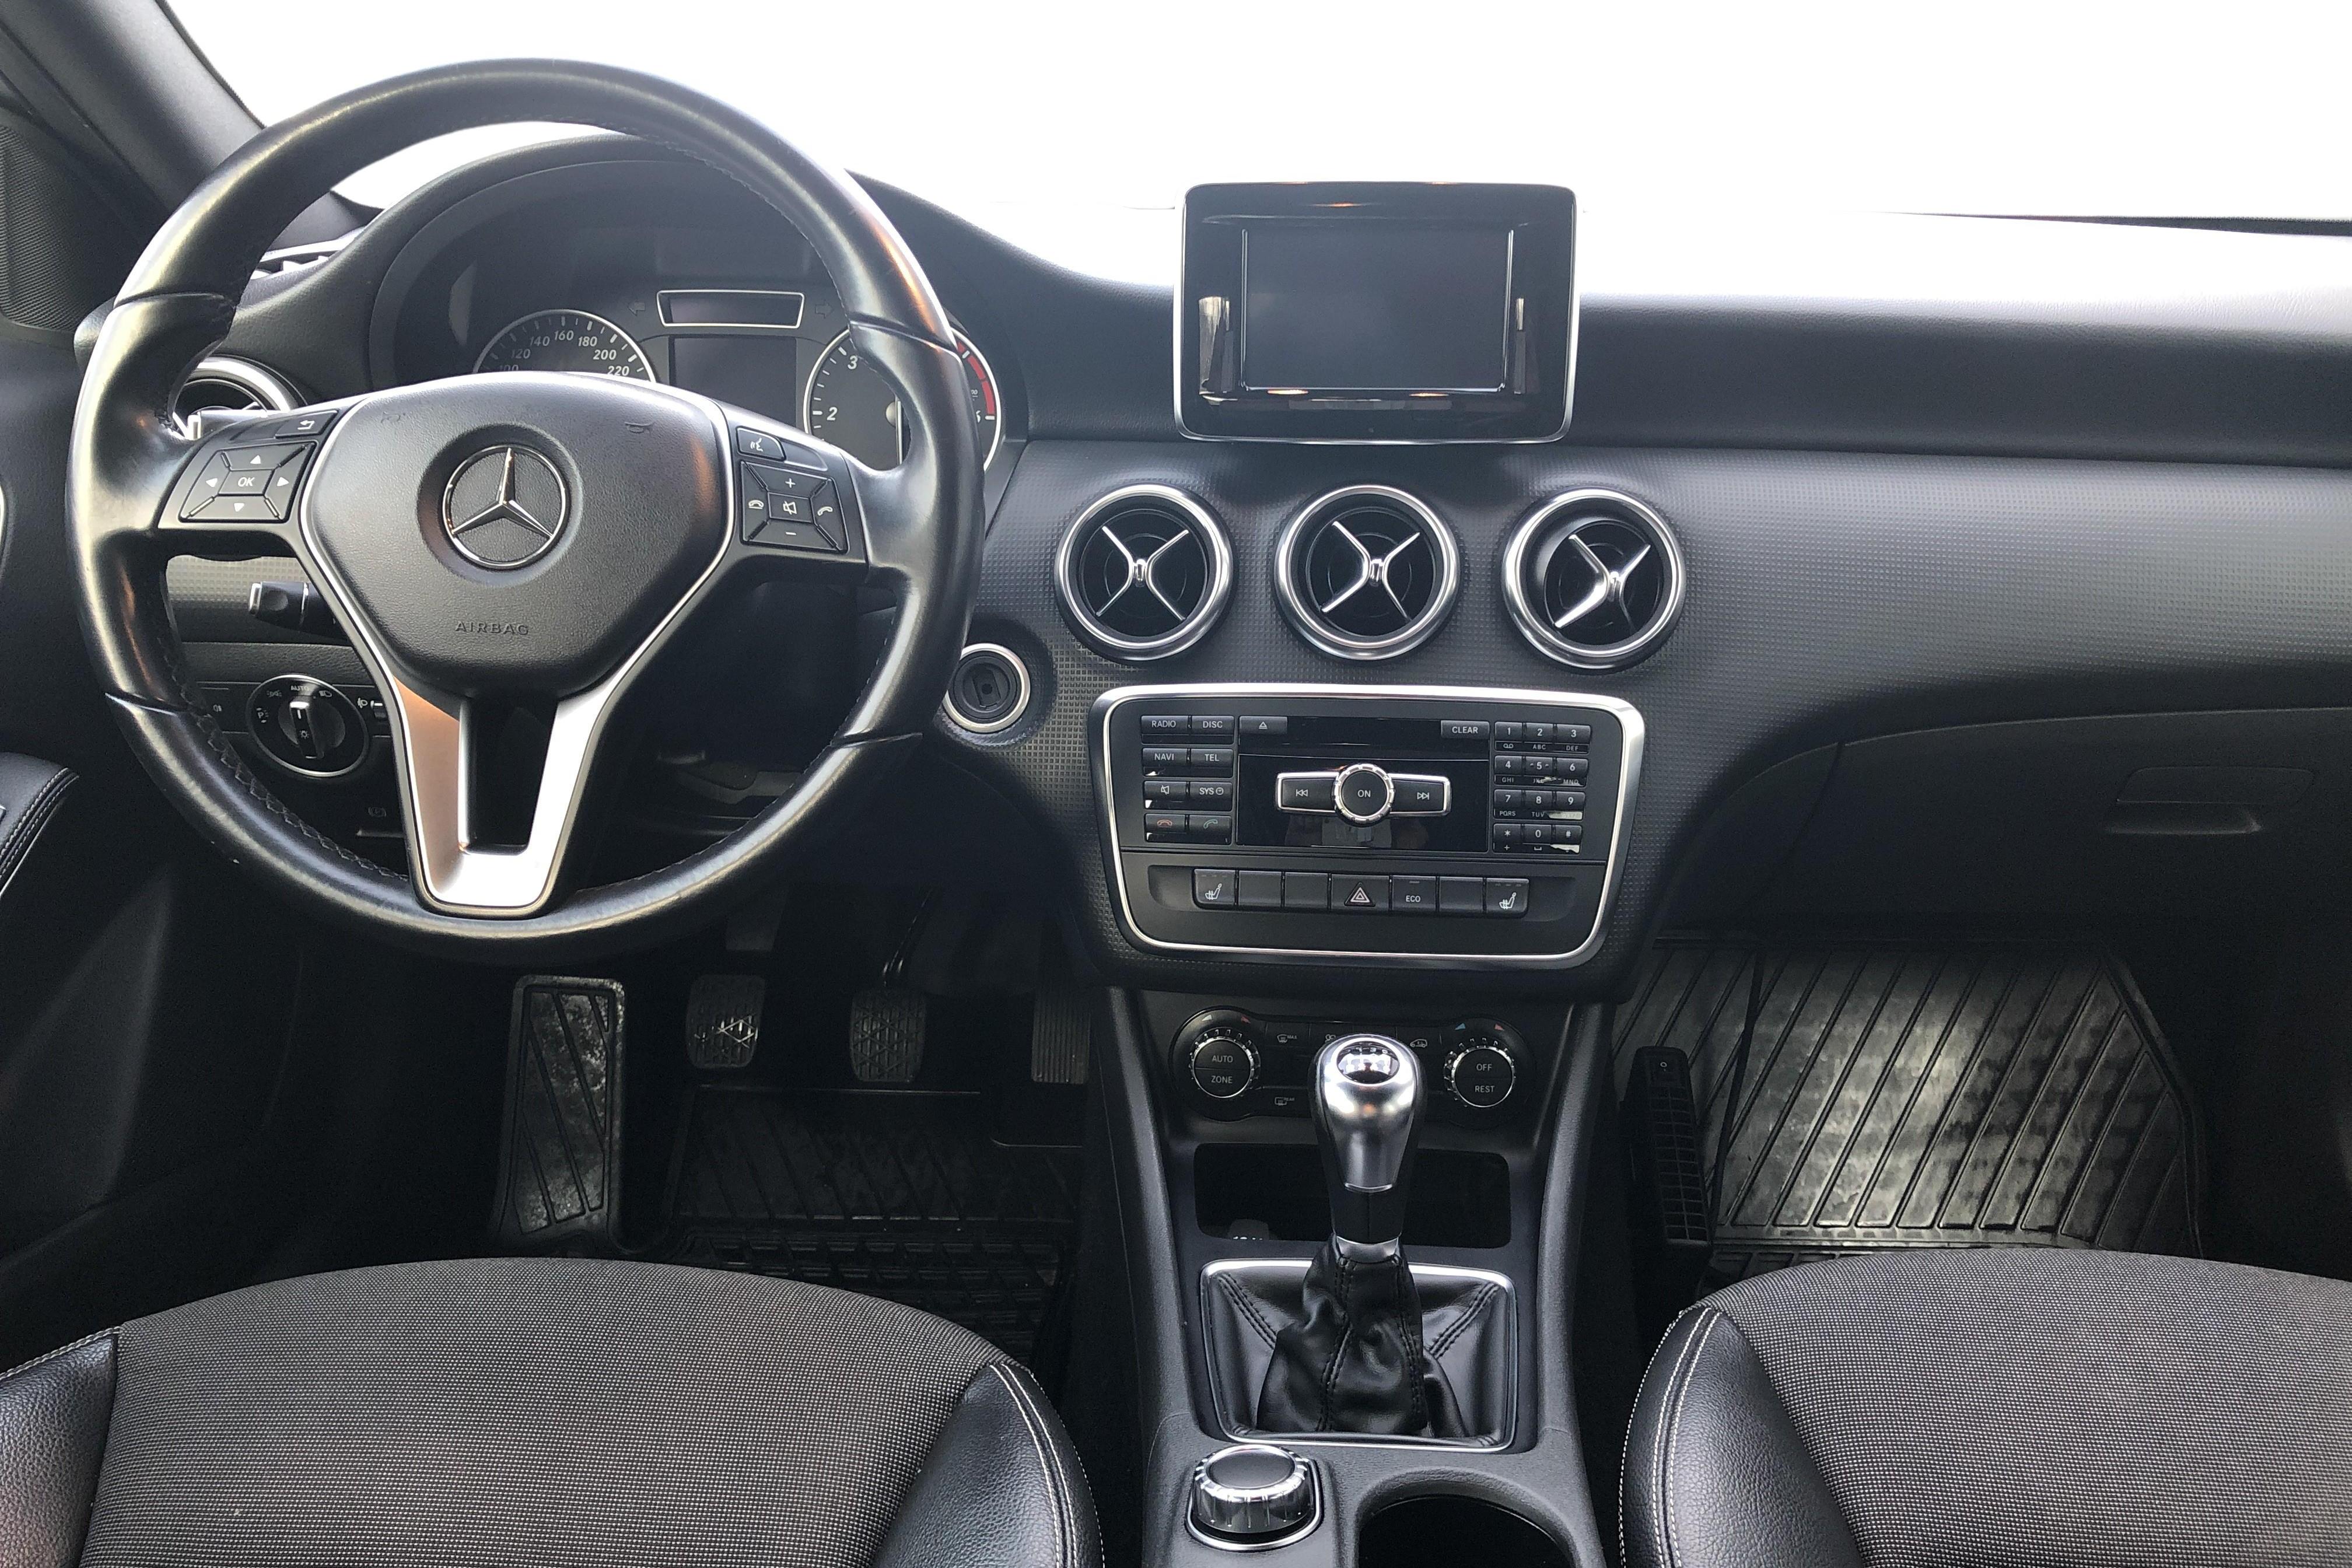 Mercedes A 180 CDI 5dr W176 (109hk) - 165 480 km - Manual - silver - 2014